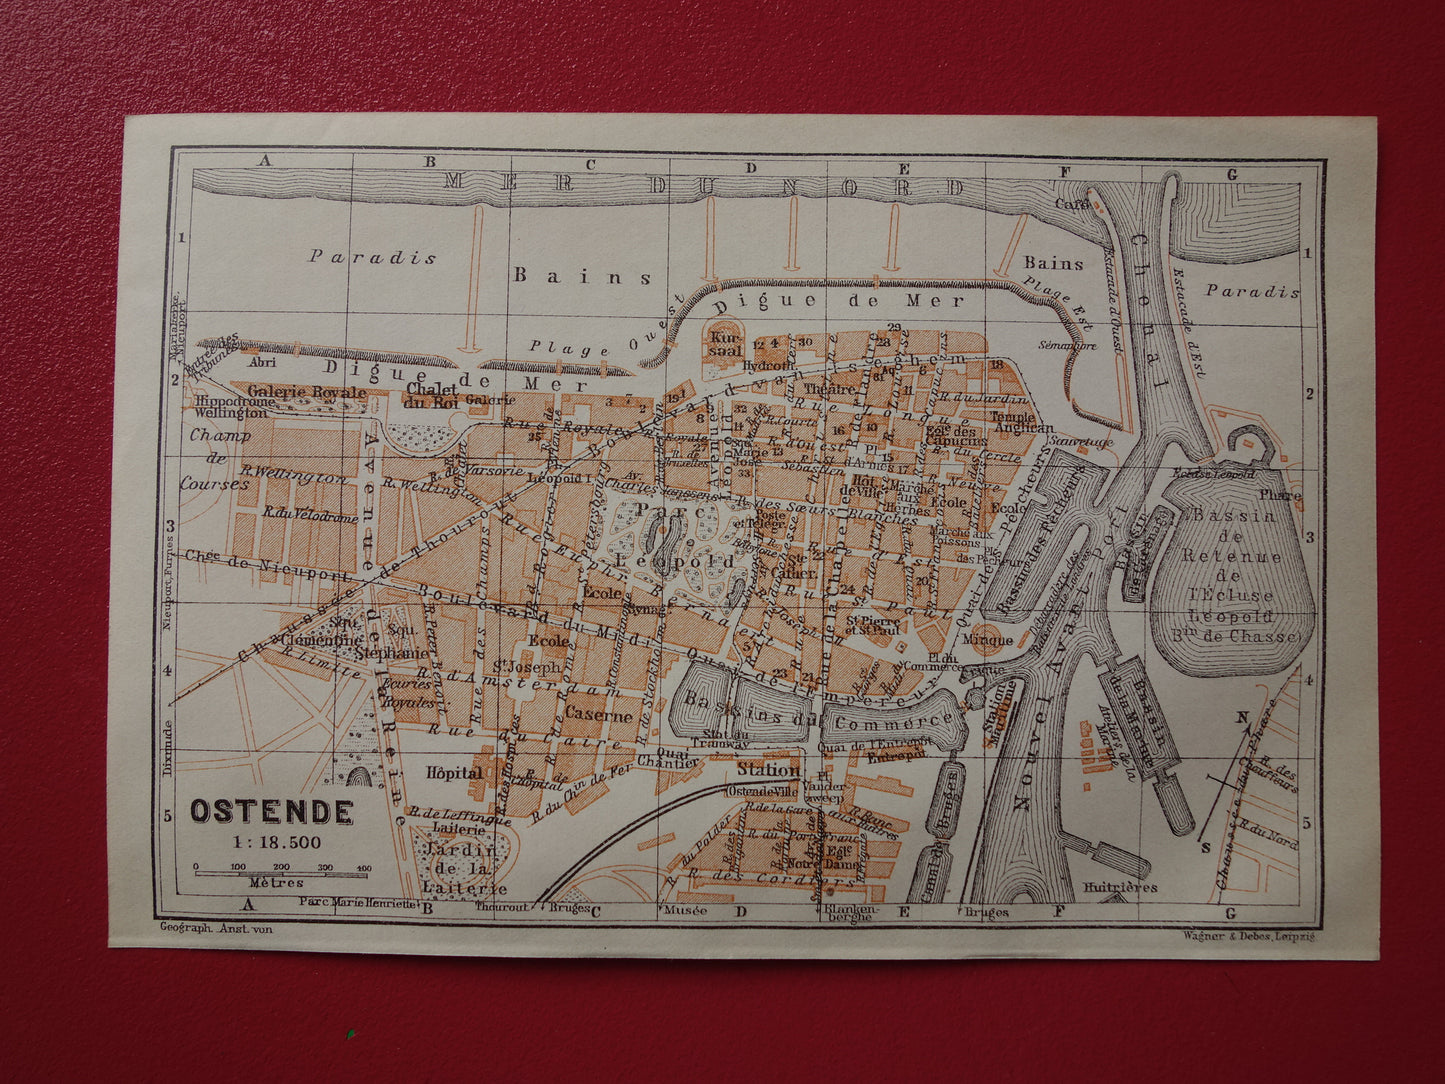 OOSTENDE oude kaart van Ostende België uit 1910 kleine originele antieke plattegrond landkaart